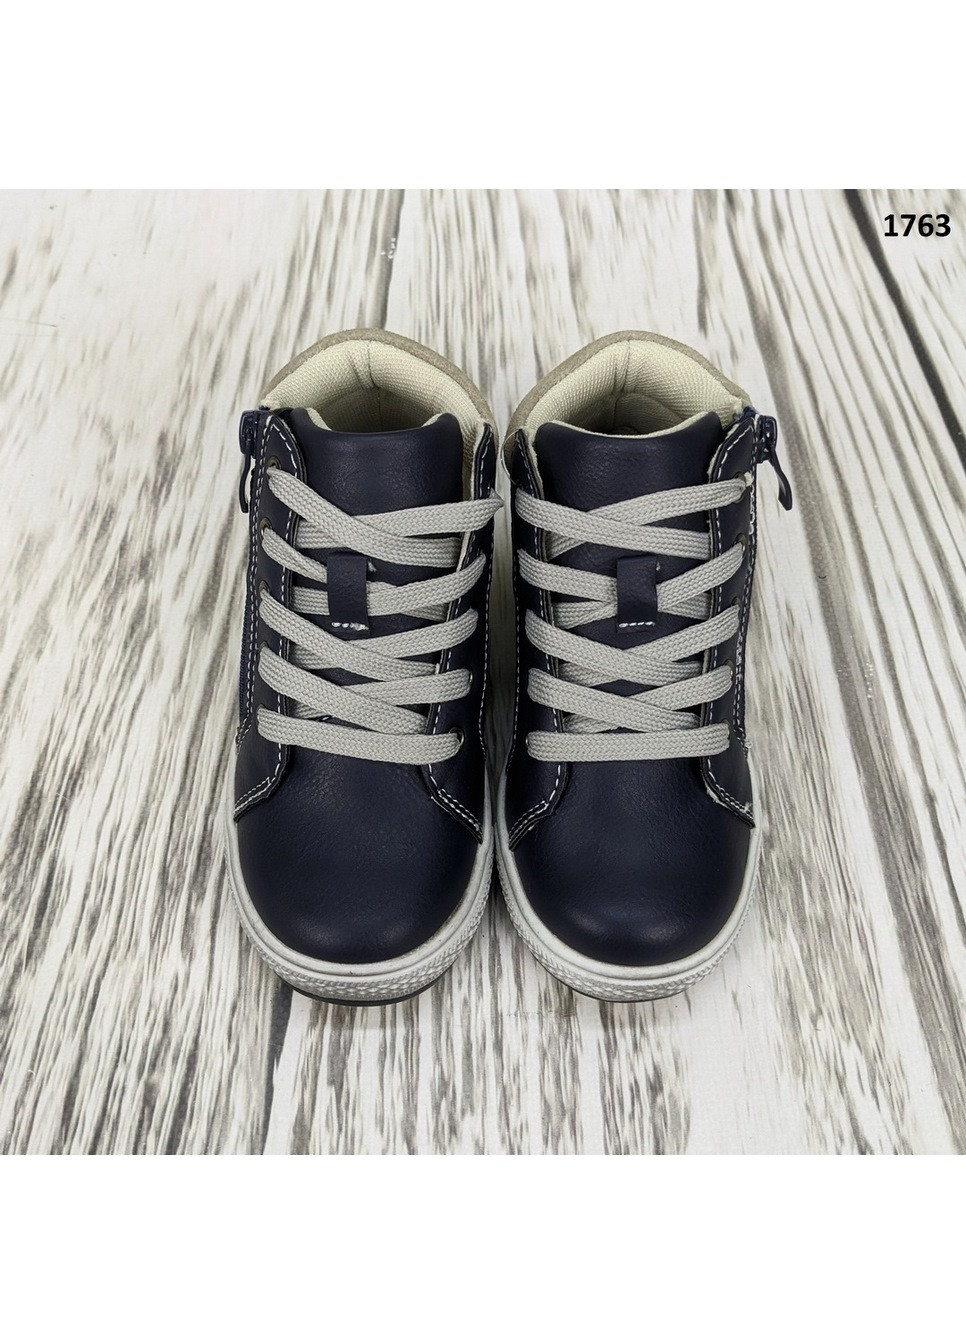 Синие повседневные осенние ботинки детские демисезонные для мальчика С.Луч